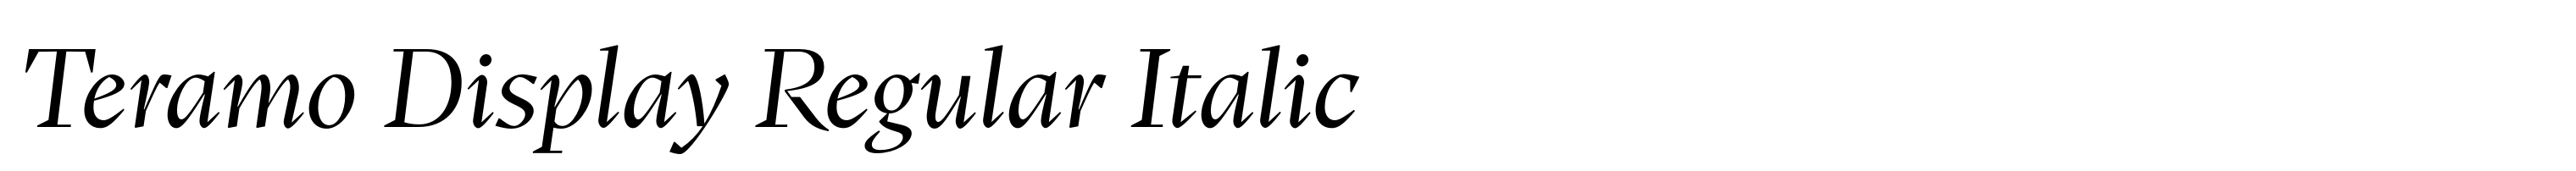 Teramo Display Regular Italic